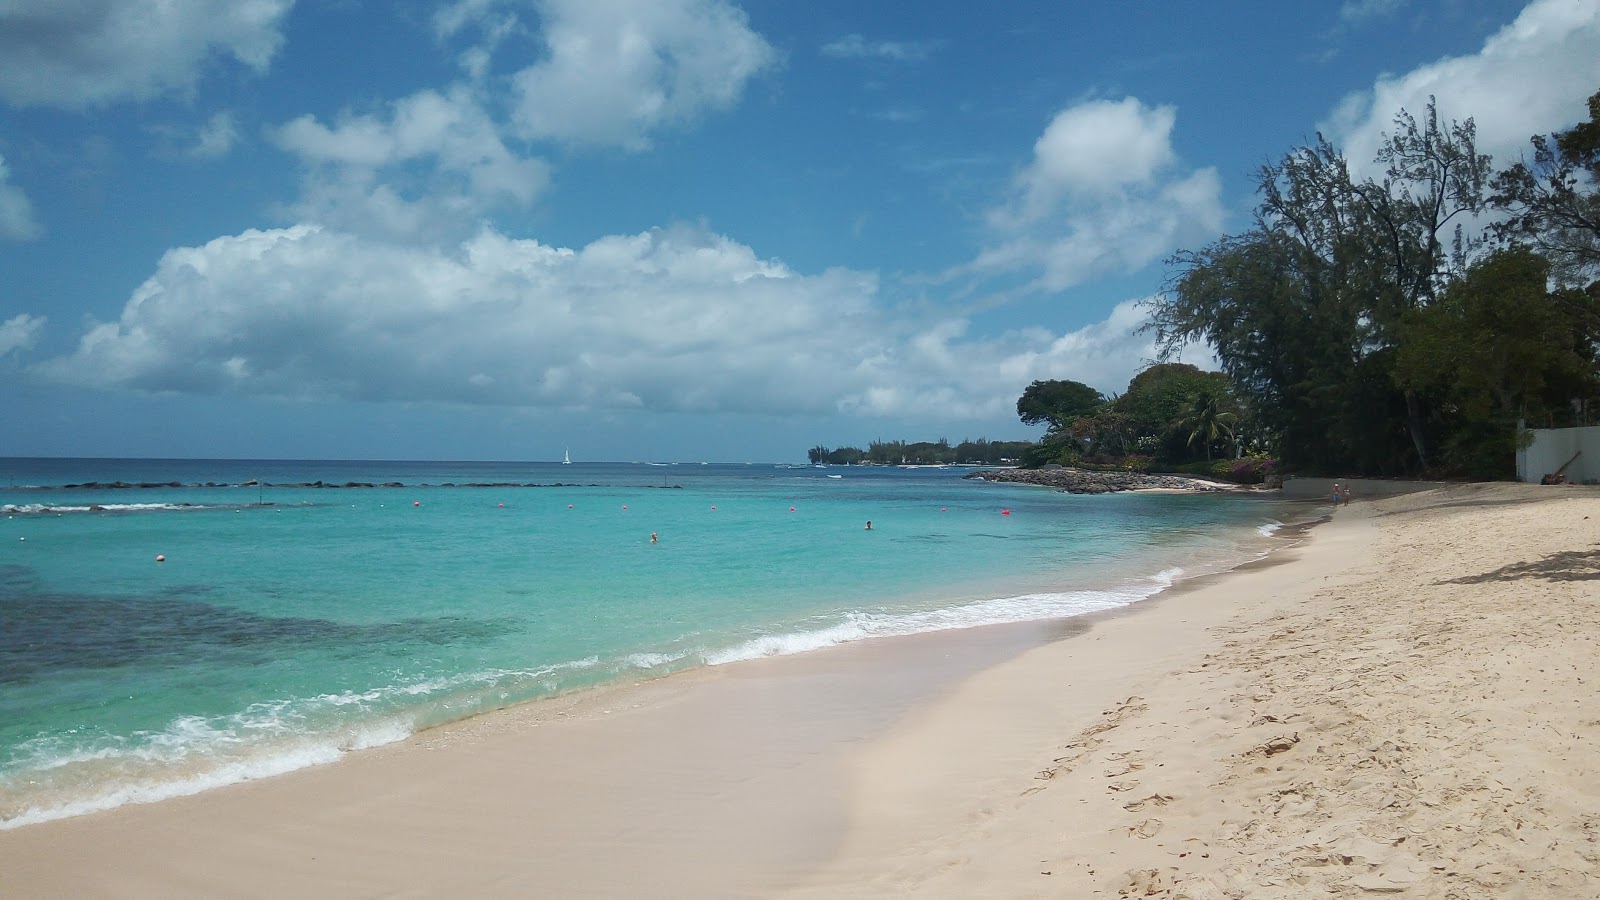 Zdjęcie Tamarindo beach z powierzchnią jasny piasek